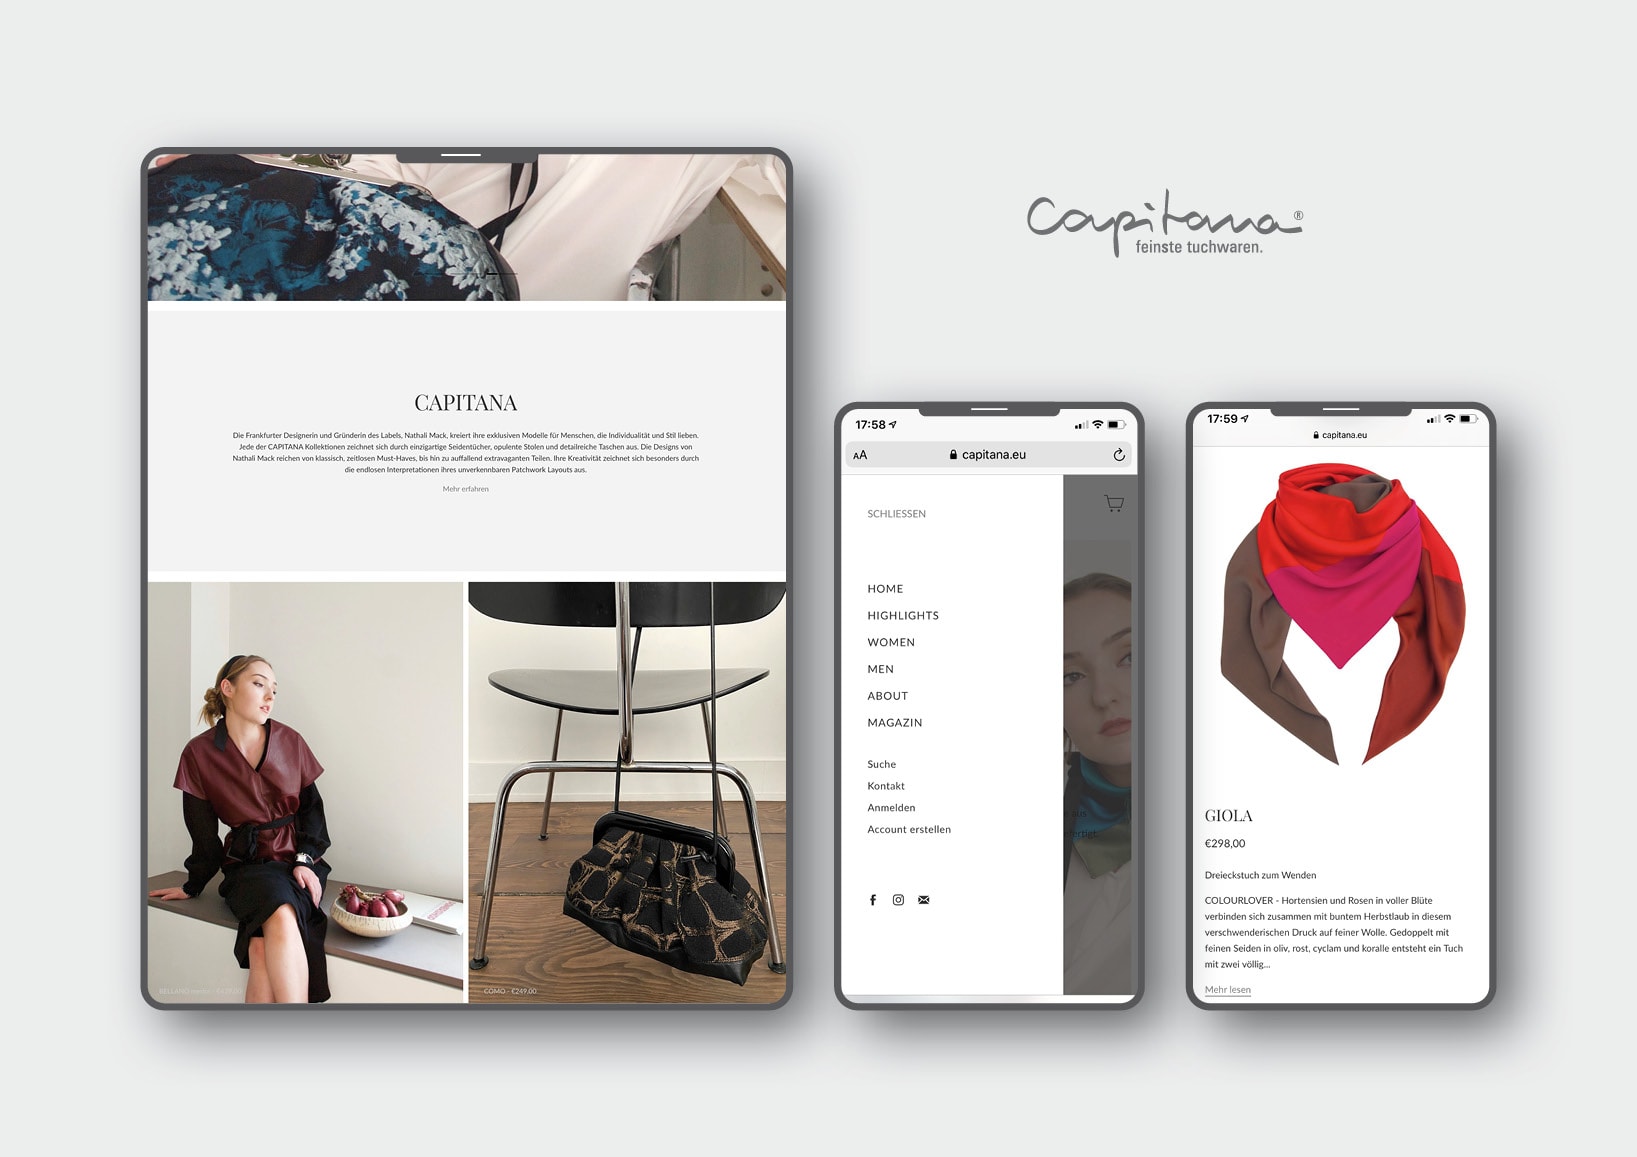 Webdesign und Erstellung innovativer Onlineshop für luxuriöse Mode-Accessoires durch Webdesigner Ronald Wissler aus Frankfurt am Main